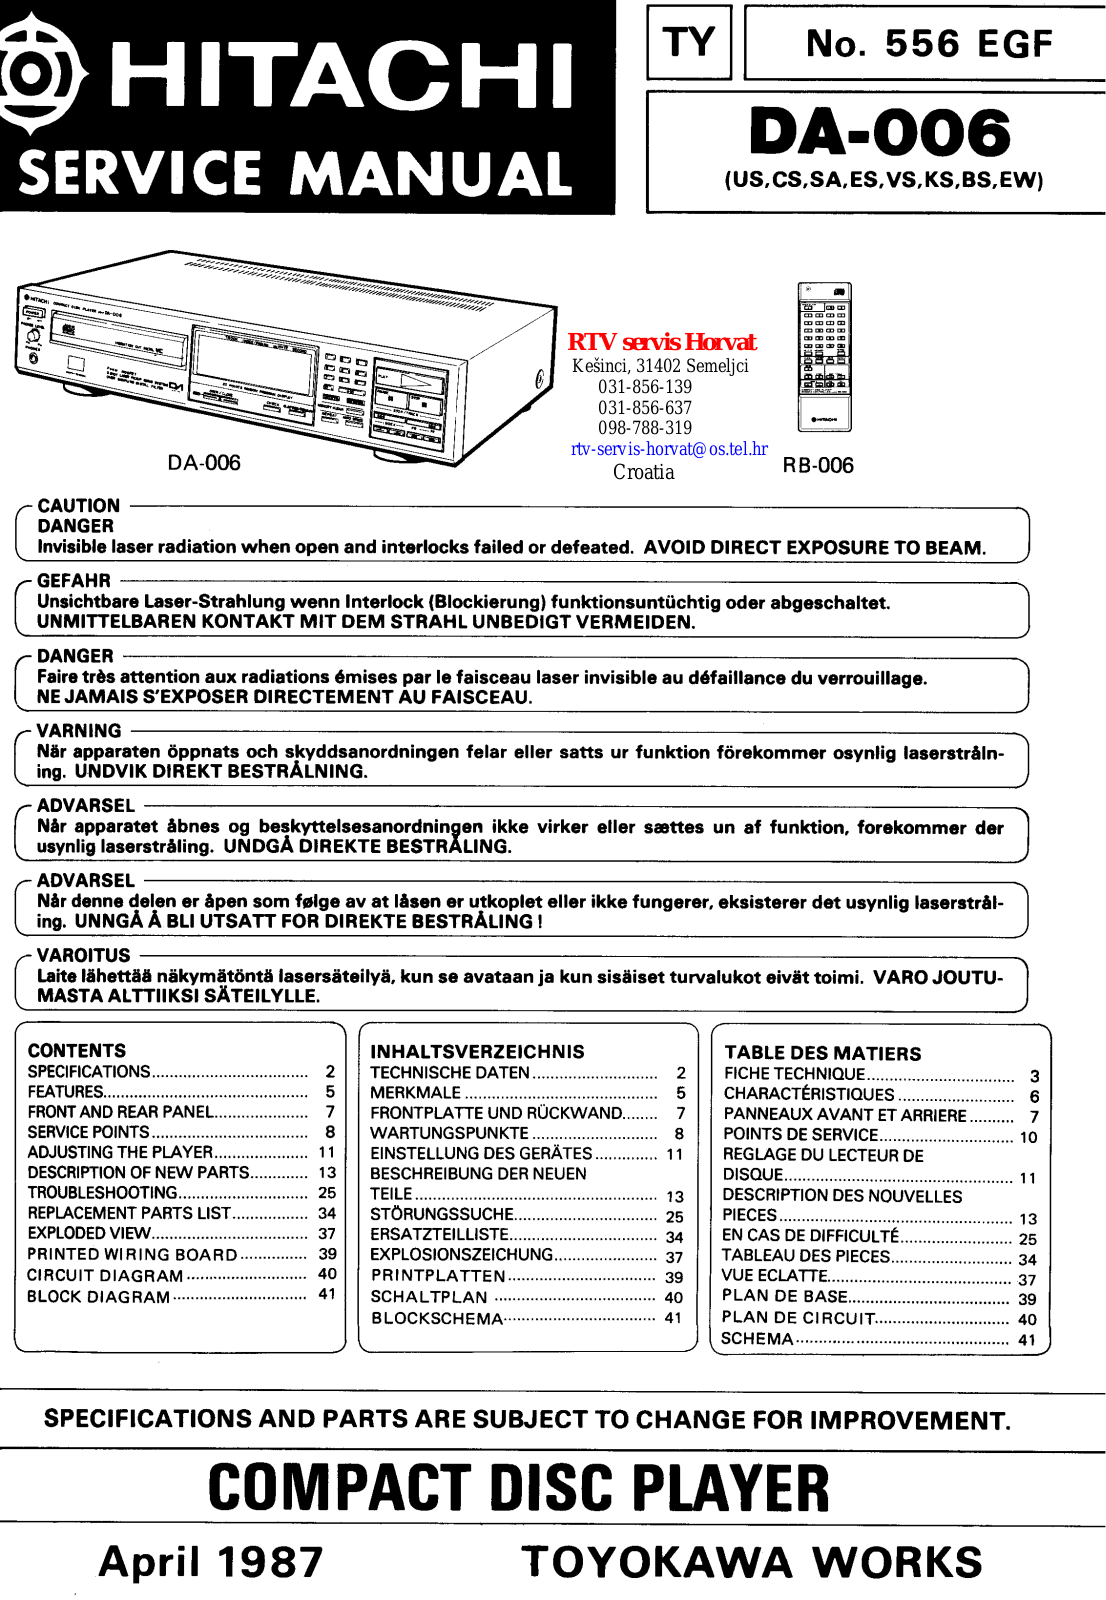 Hitachi DA-006 Service manual